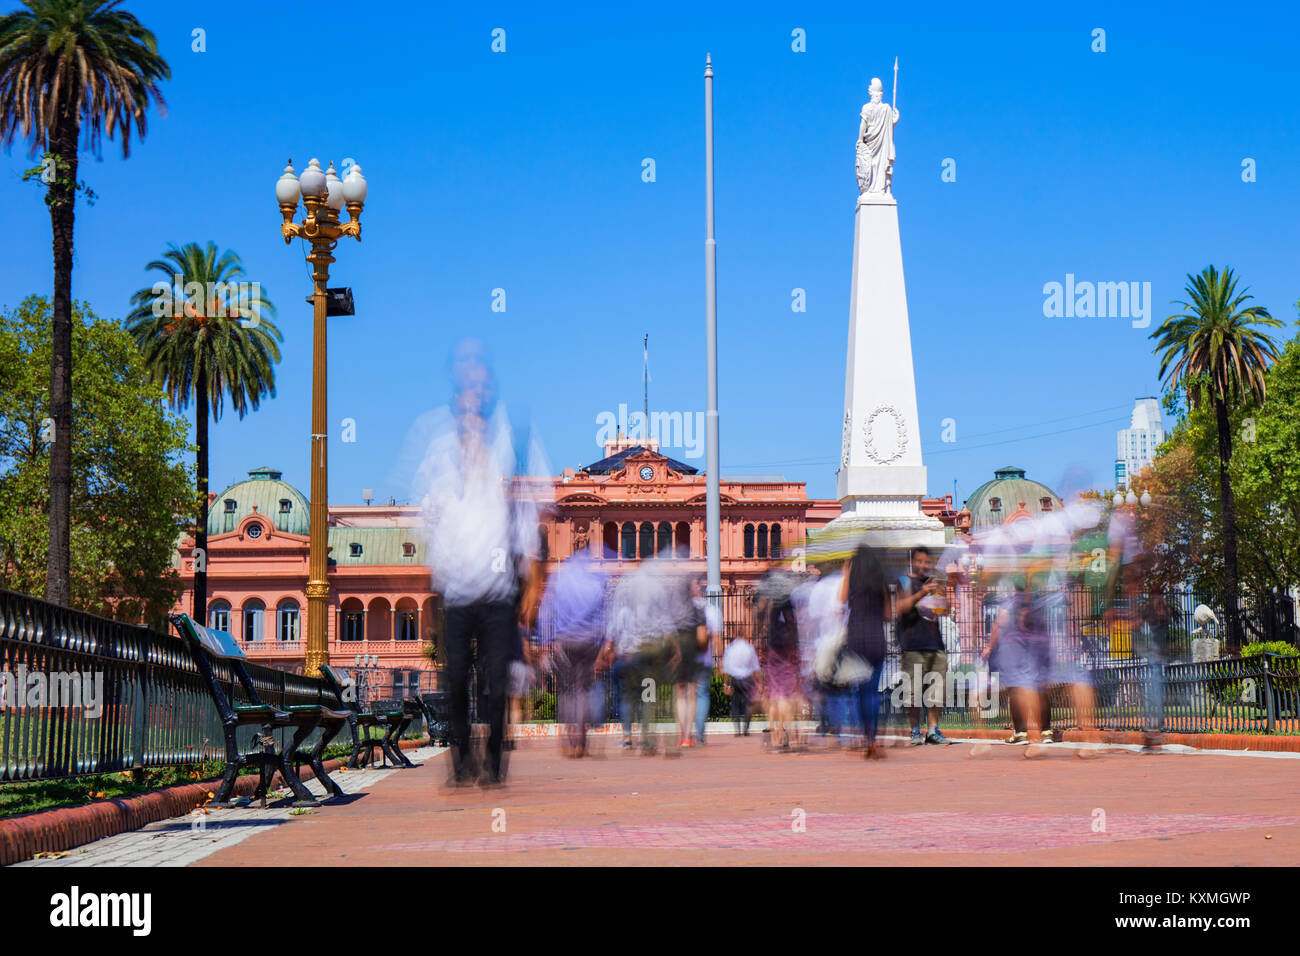 Les gens qui marchent sur la Plaza de Mayo, avec la Casa Rosada en arrière-plan. Monserrat, Buenos Aires, Argentine. Banque D'Images